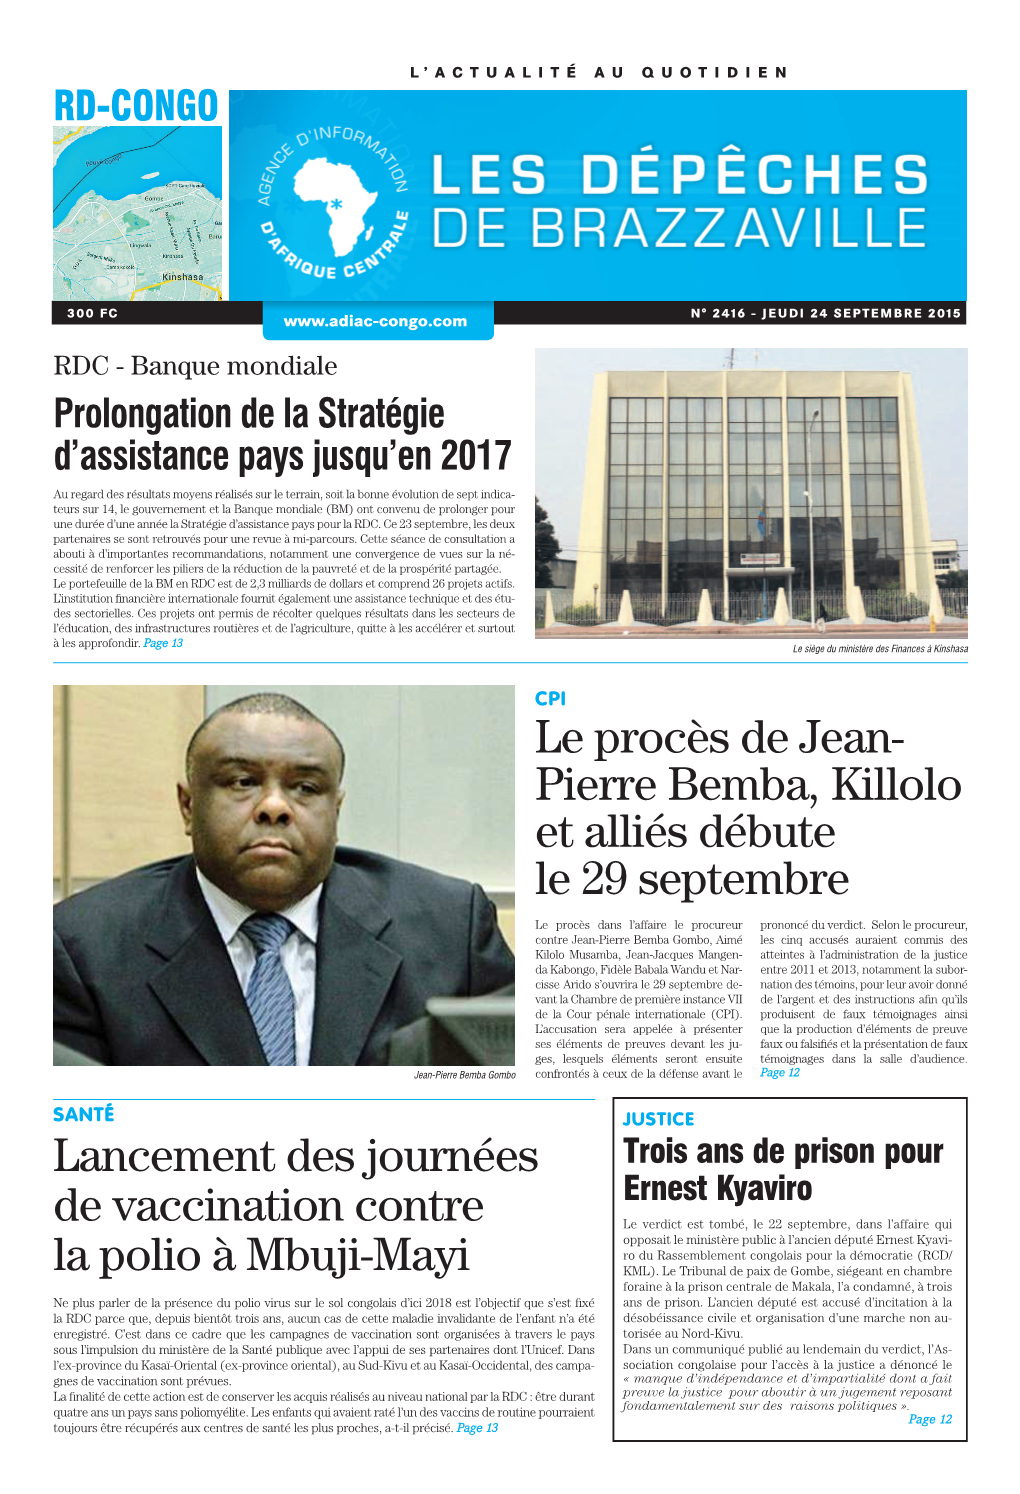 Pierre Bemba, Killolo Et Alliés Débute Le 29 Septembre Lancement Des